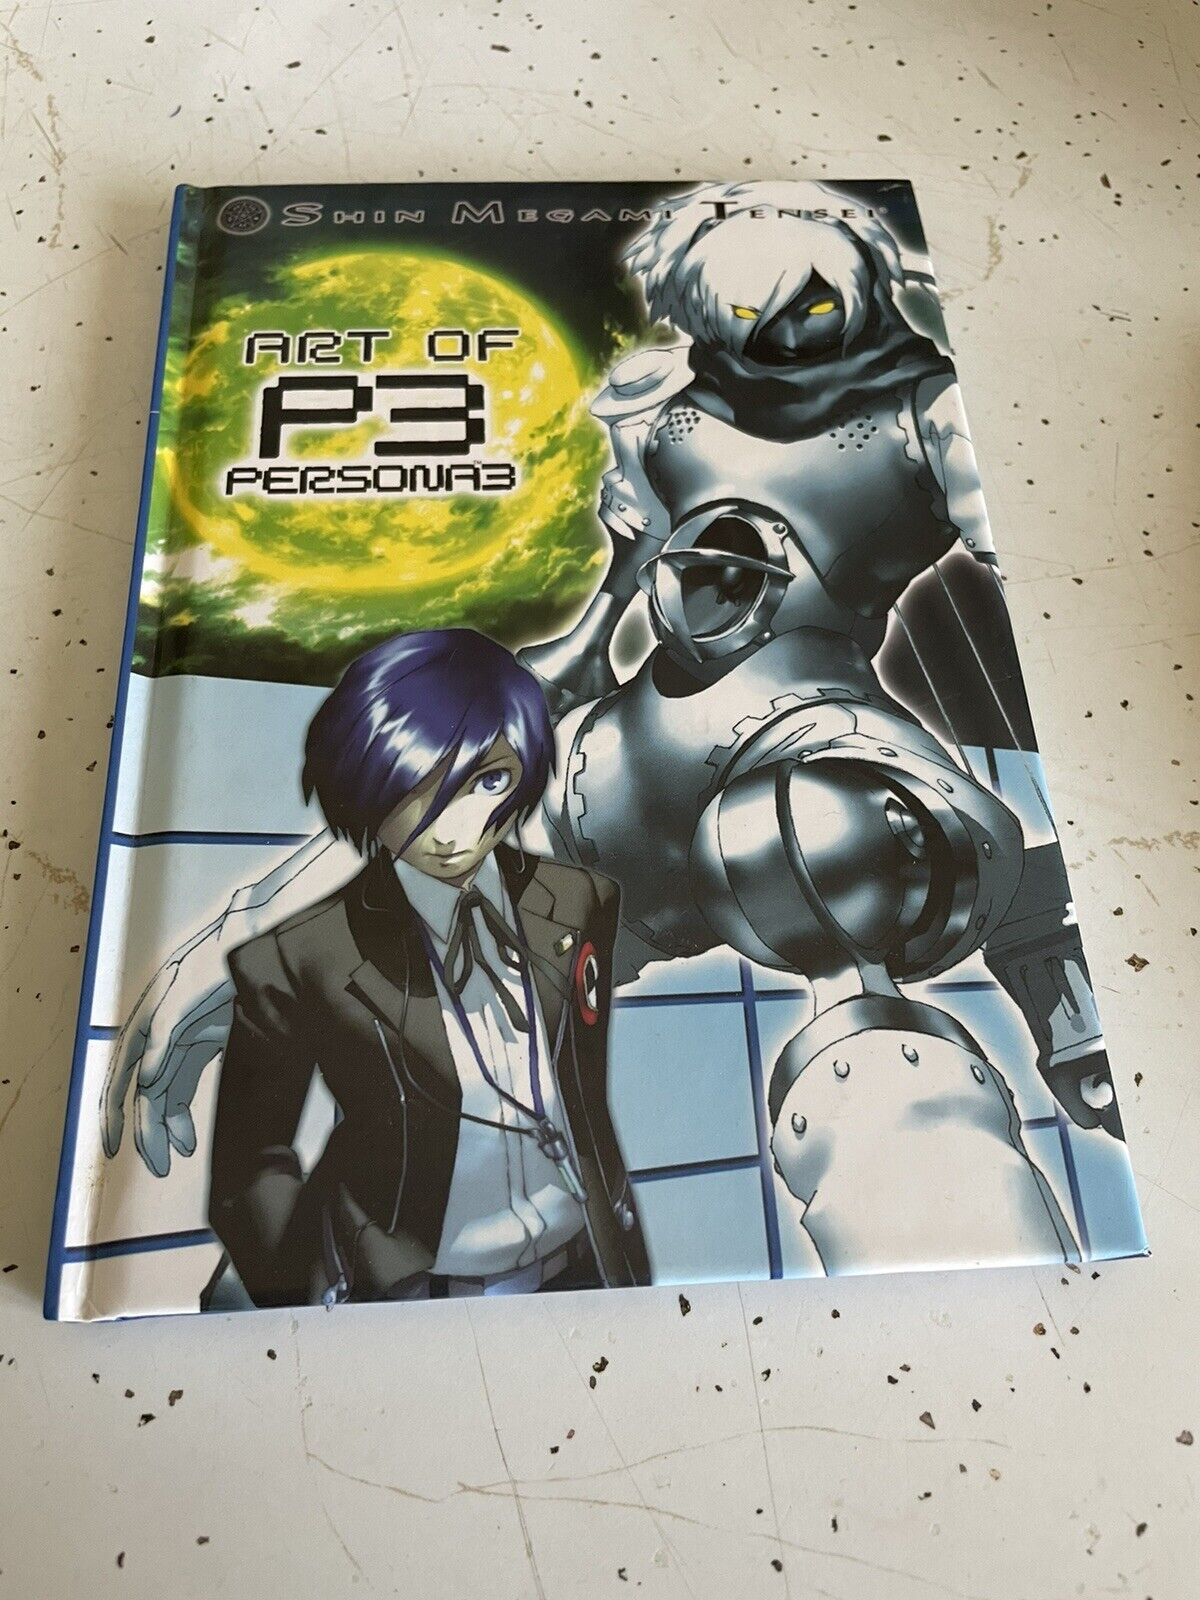 Shin Megami Tensei ART of P3 Persona 3 Hardcover Book & Soundtrack Attached